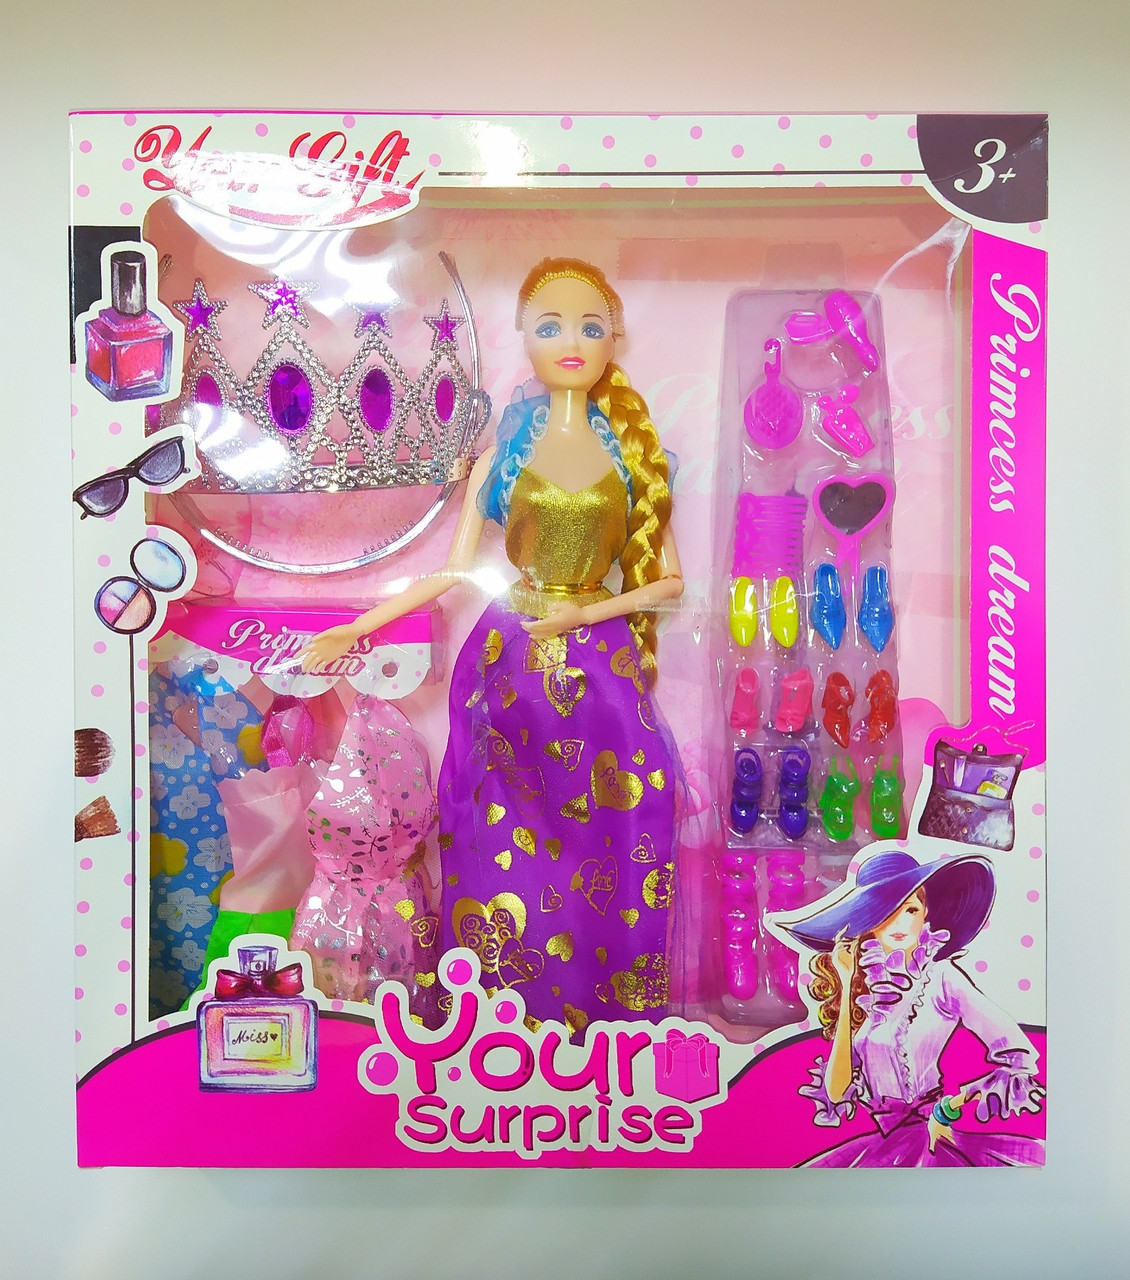 Игровой набор "Your surprise" Кукла с платьями, рост куклы 29 см, арт.BLM86C7